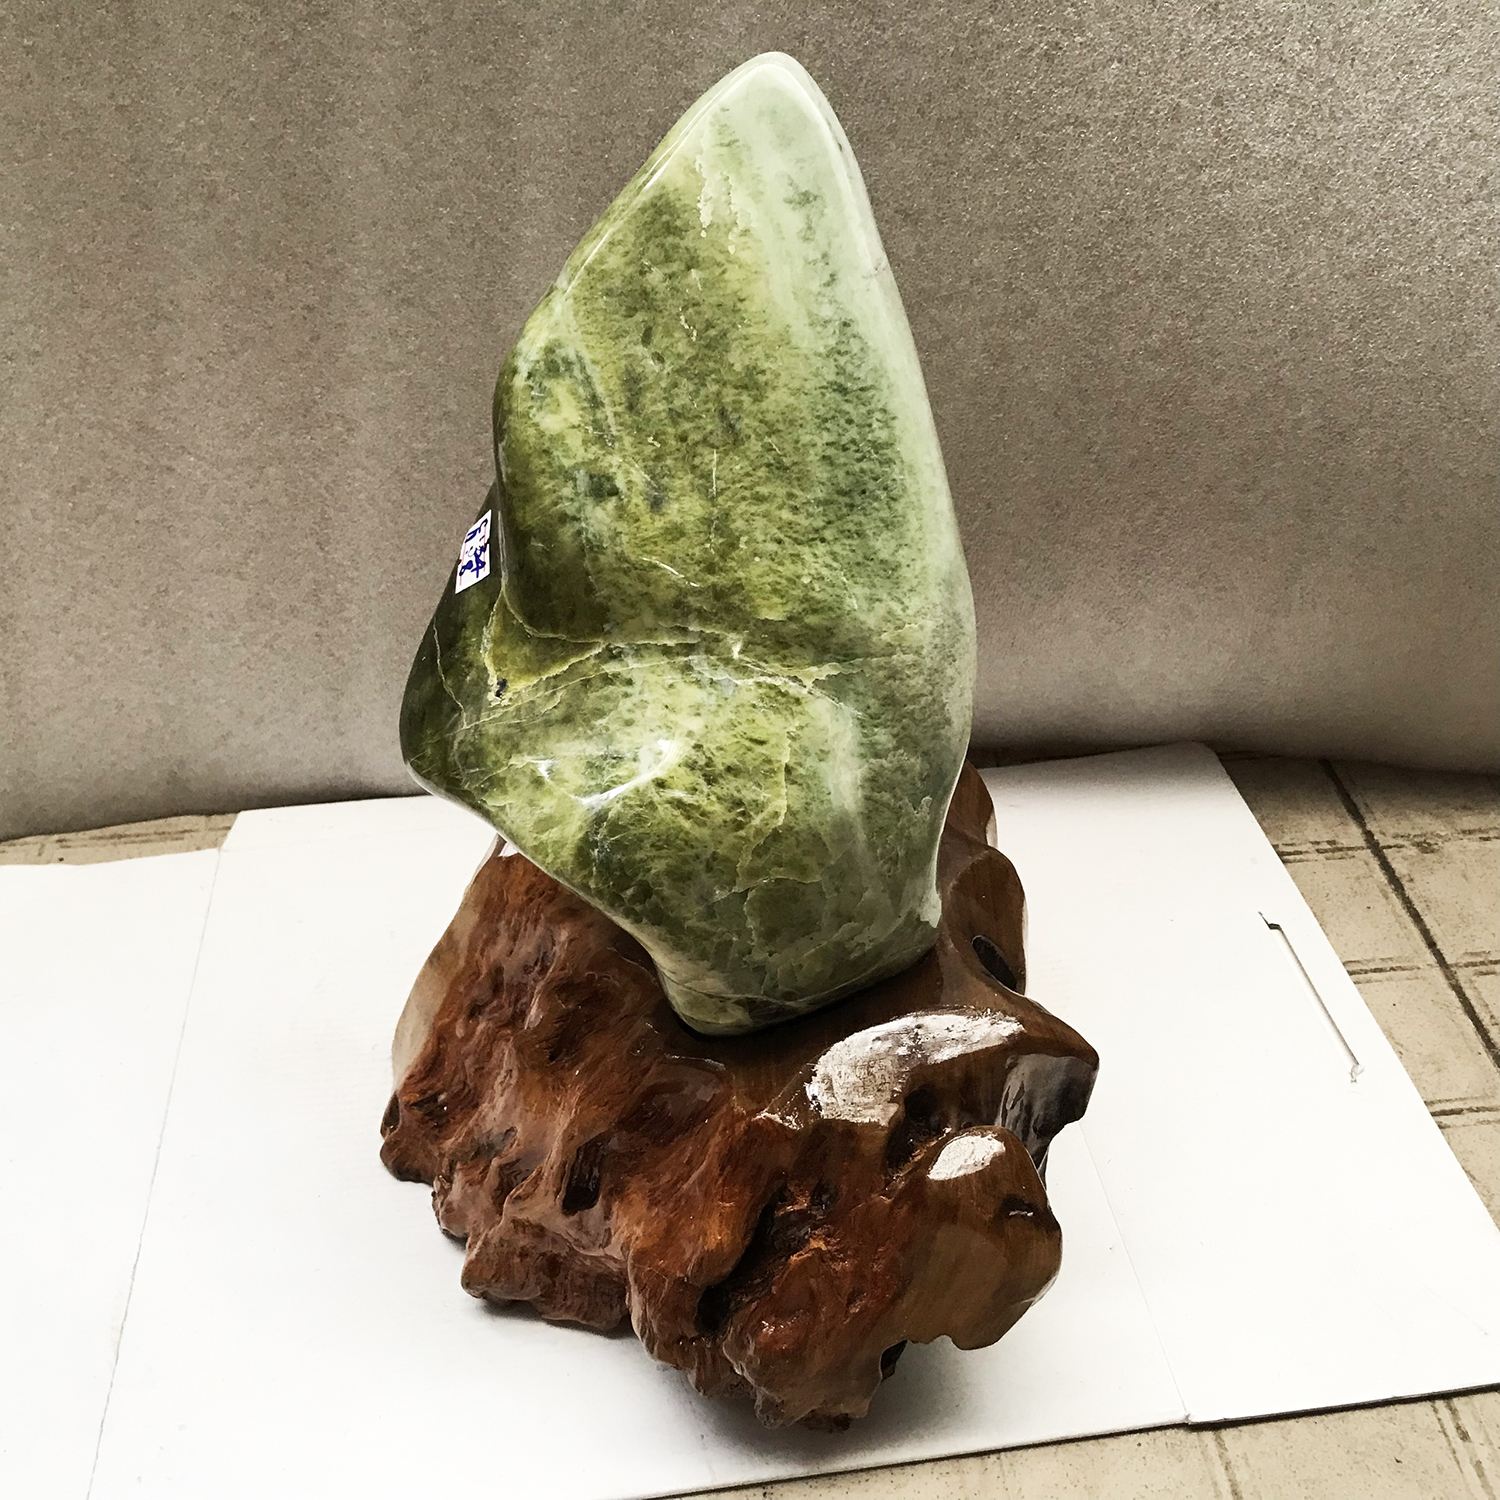 Cây đá để bàn tự nhiên màu cốm nặng hơn 8 kg, cao hơn 40 cm cho người mệnh Hỏa và Mộc